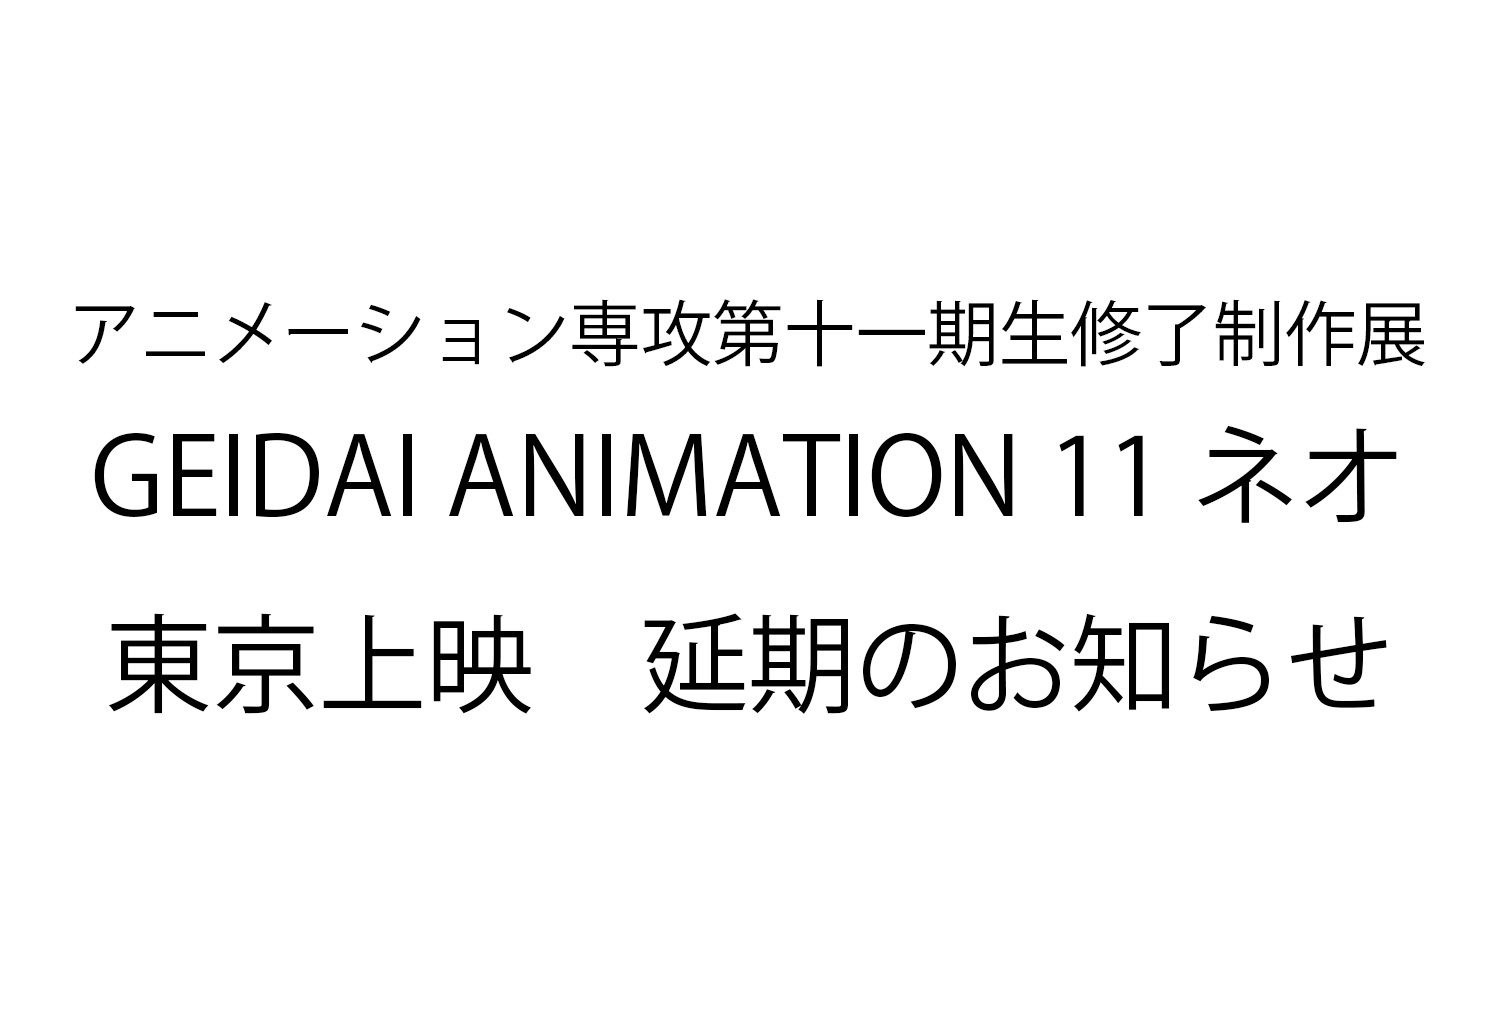 GEIDAI ANIMATION 11ネオ  東京上映  延期（未定）のお知らせ